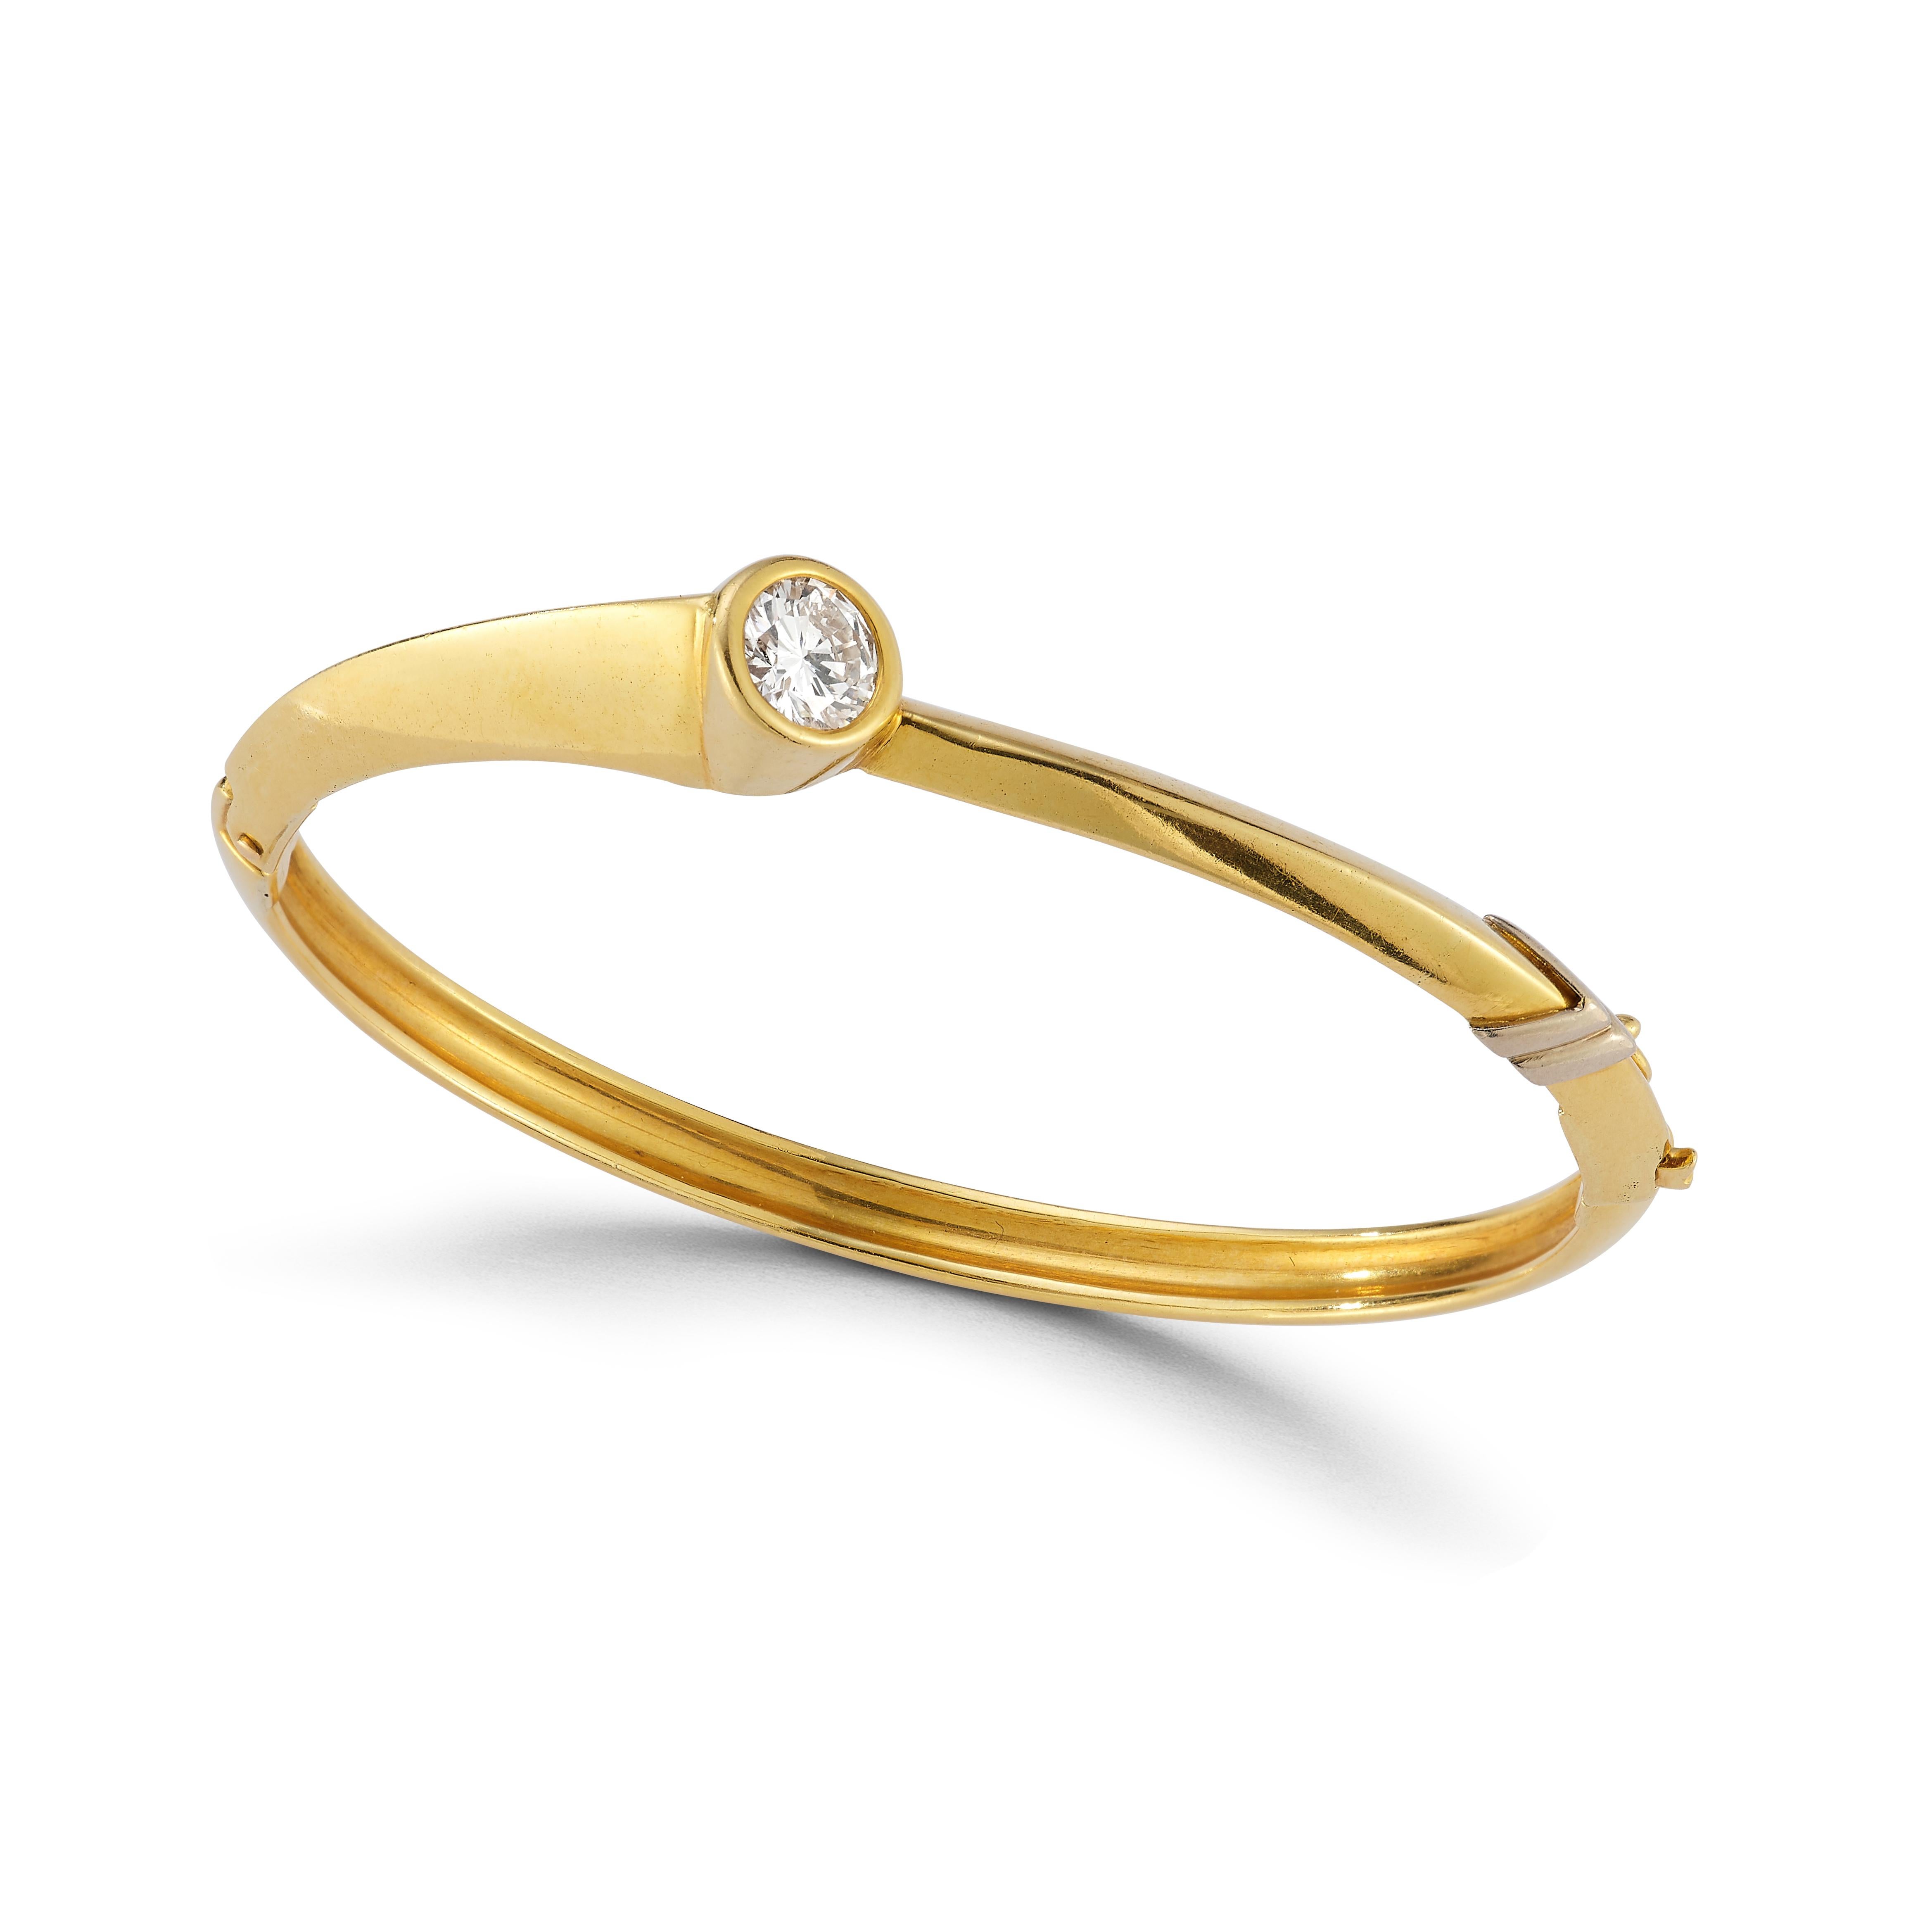 Diamant & Gold Armreif

1 Diamant mit rundem Schliff in Lünette aus 18 Karat Gelbgold

Ungefähres Diamantgewicht: 1,09 Karat 

Umfang: 6.25